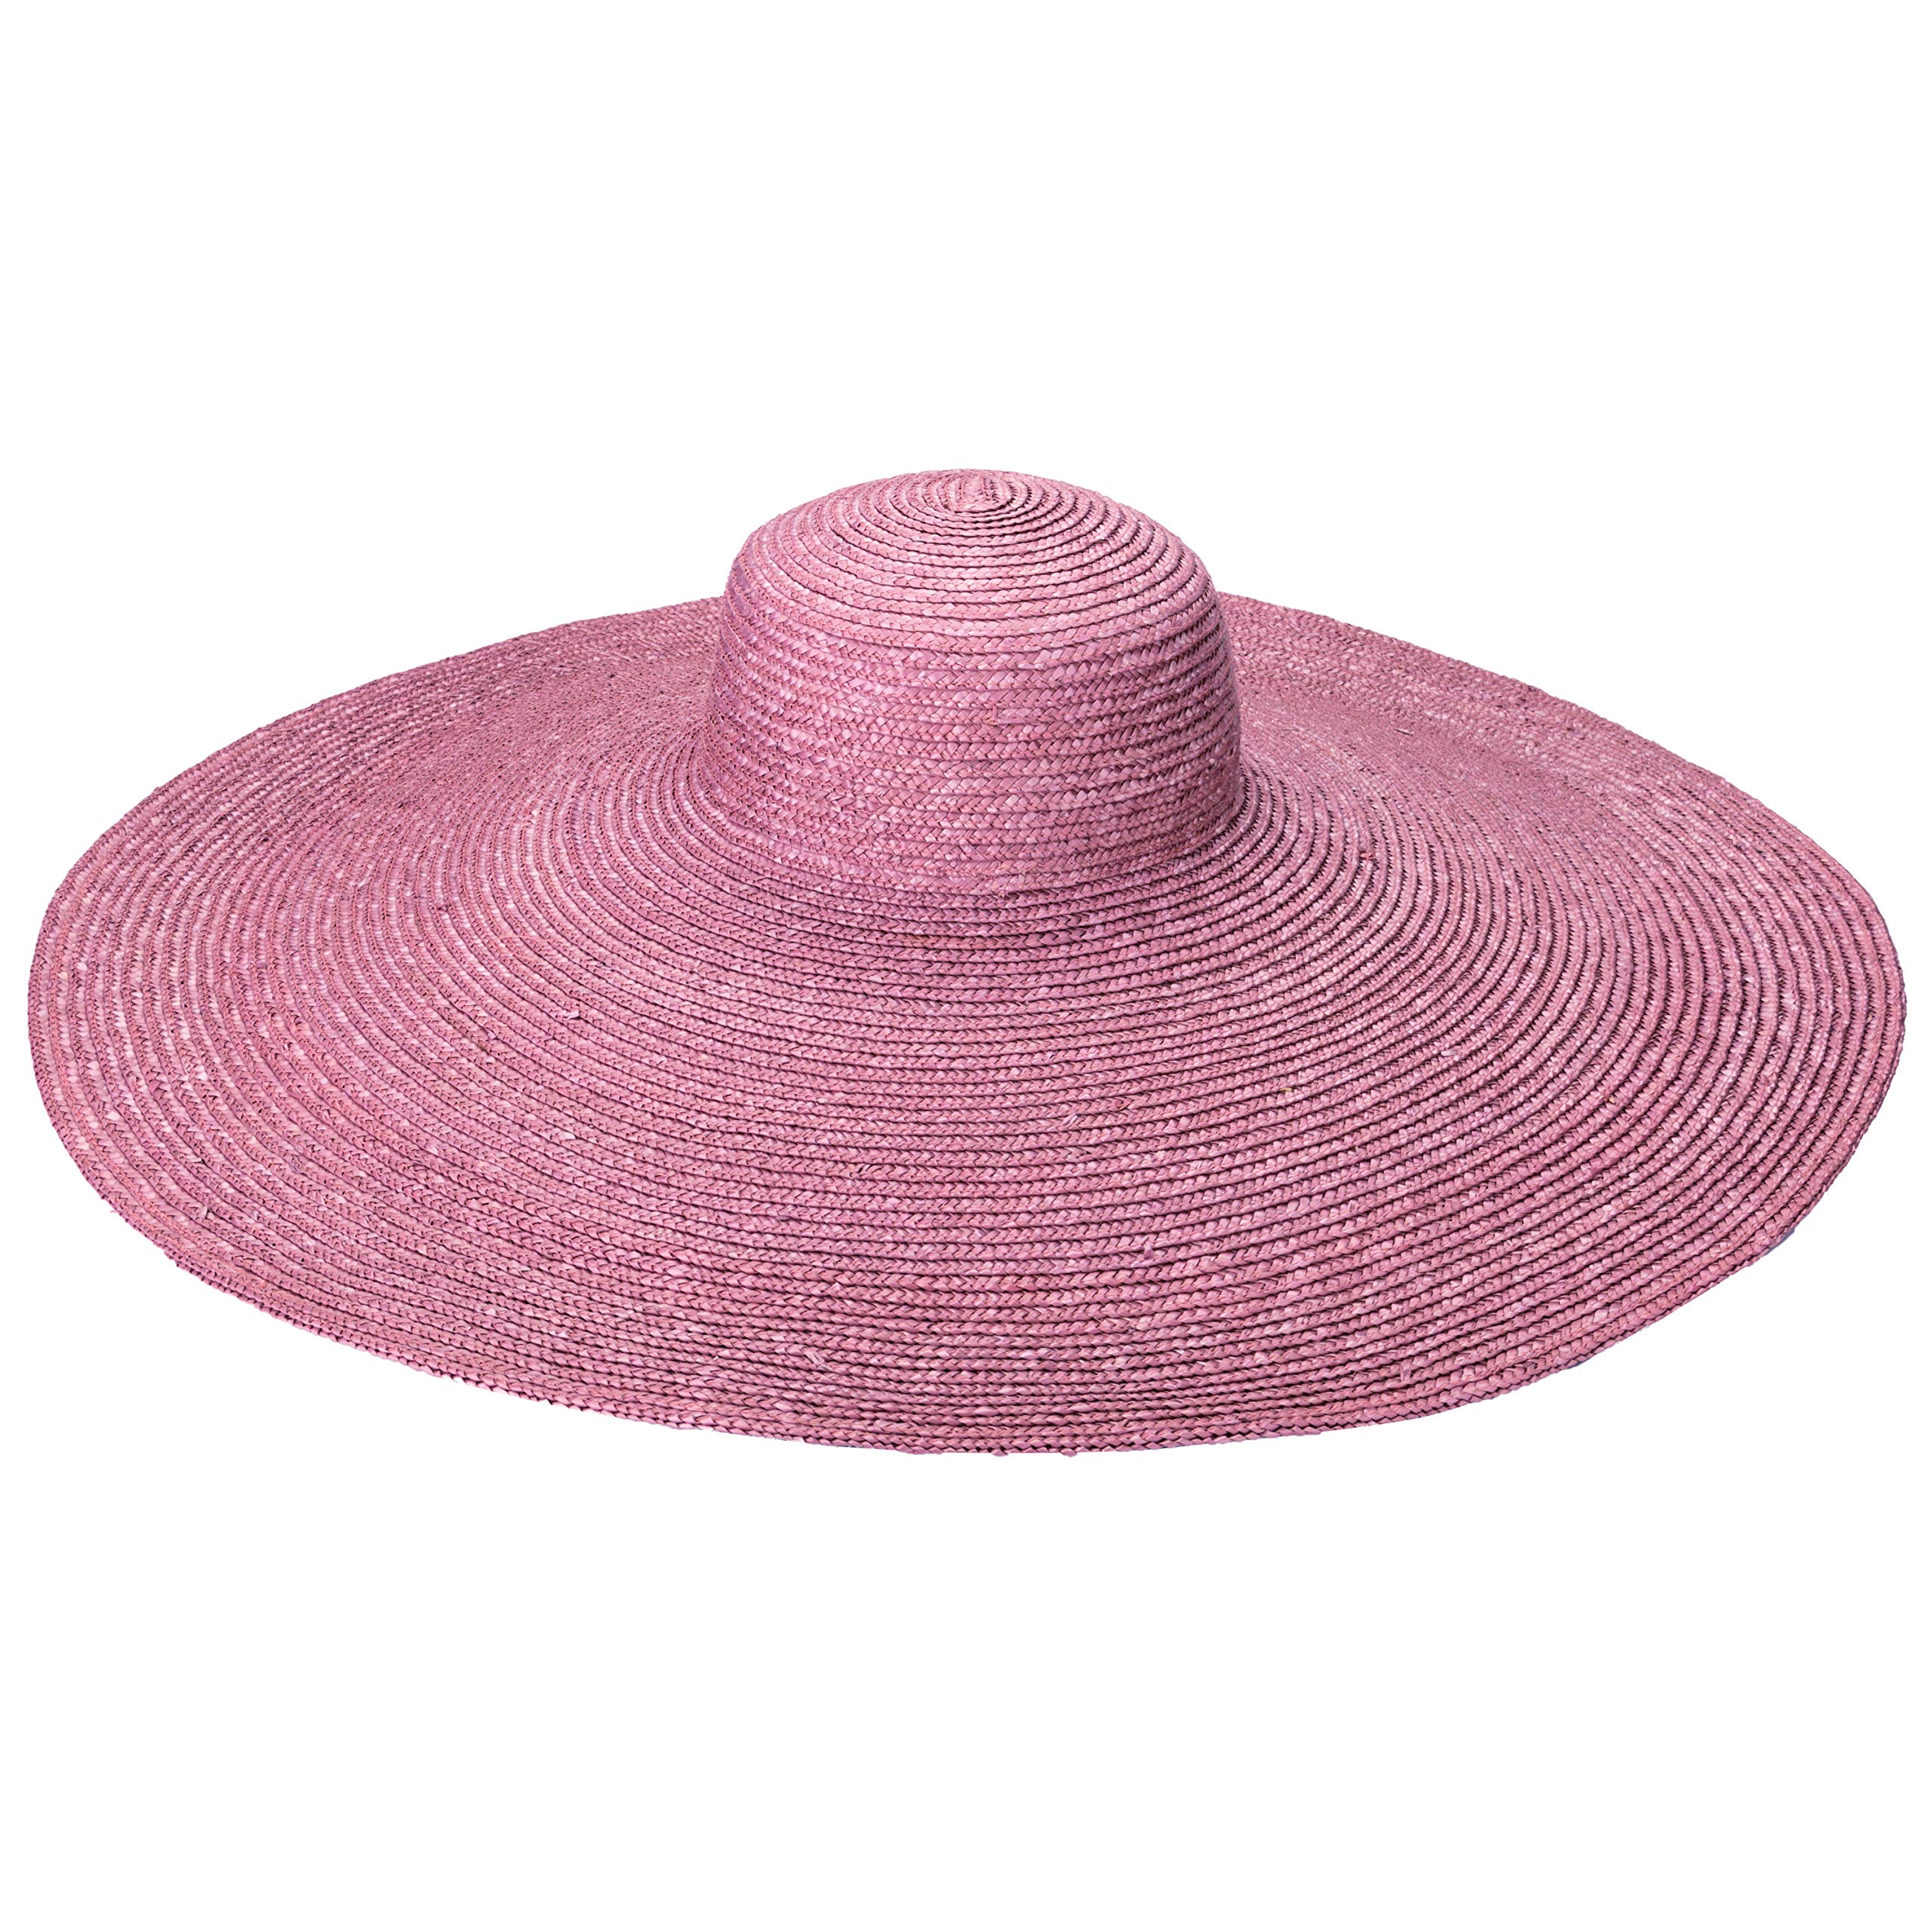 Пшеничная соломенная шляпа с большими полями San Diego Hat Company